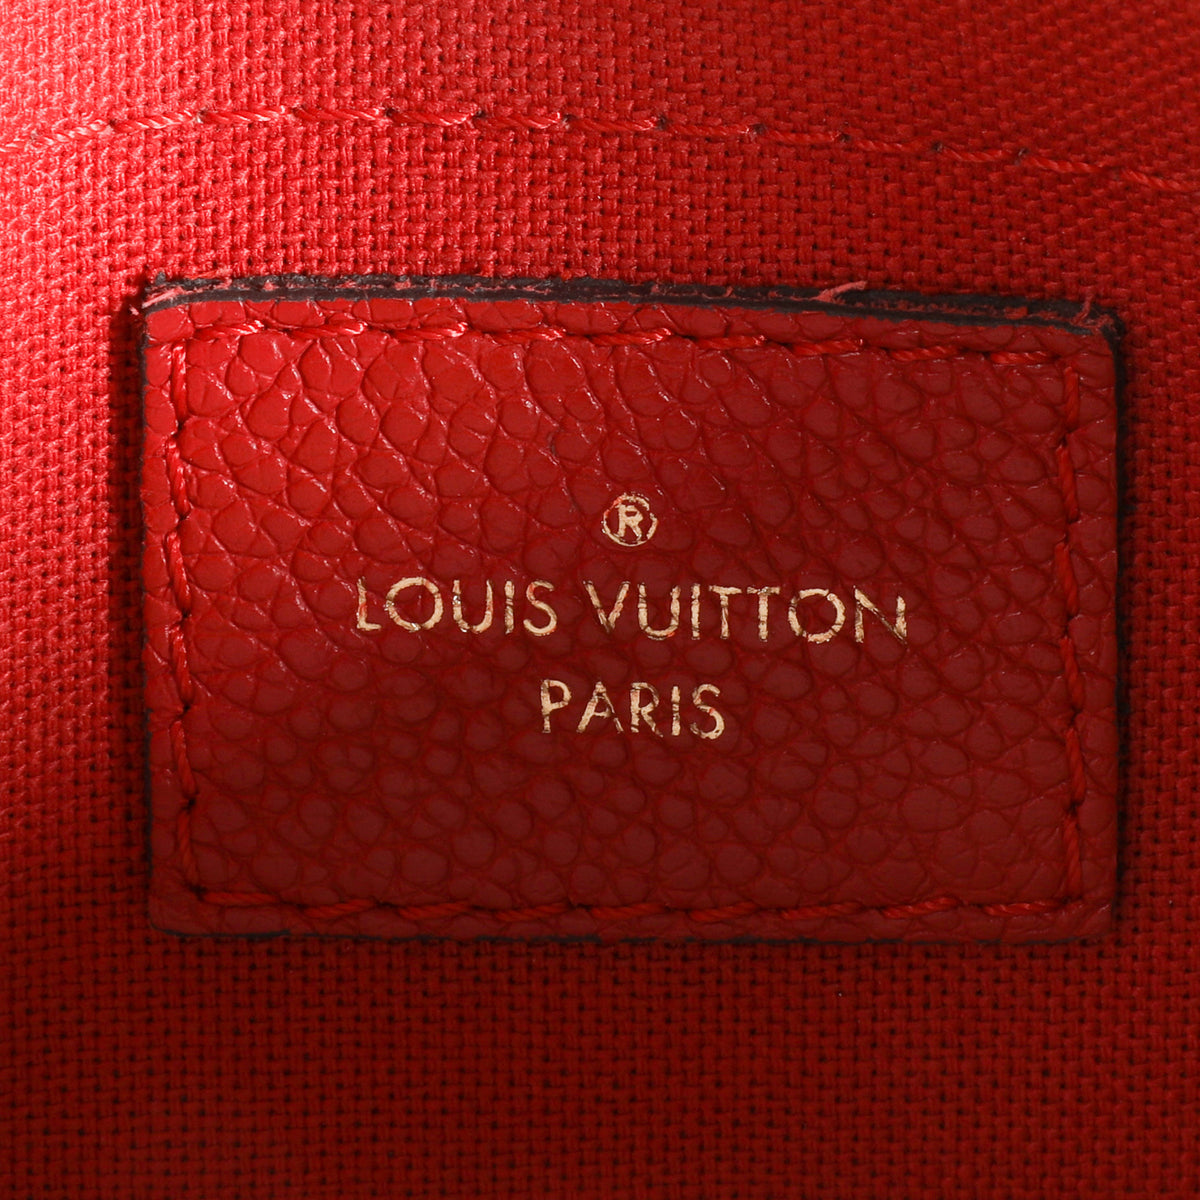 Louis Vuitton Monogram Canvas & Cerise Pallas Clutch by WP